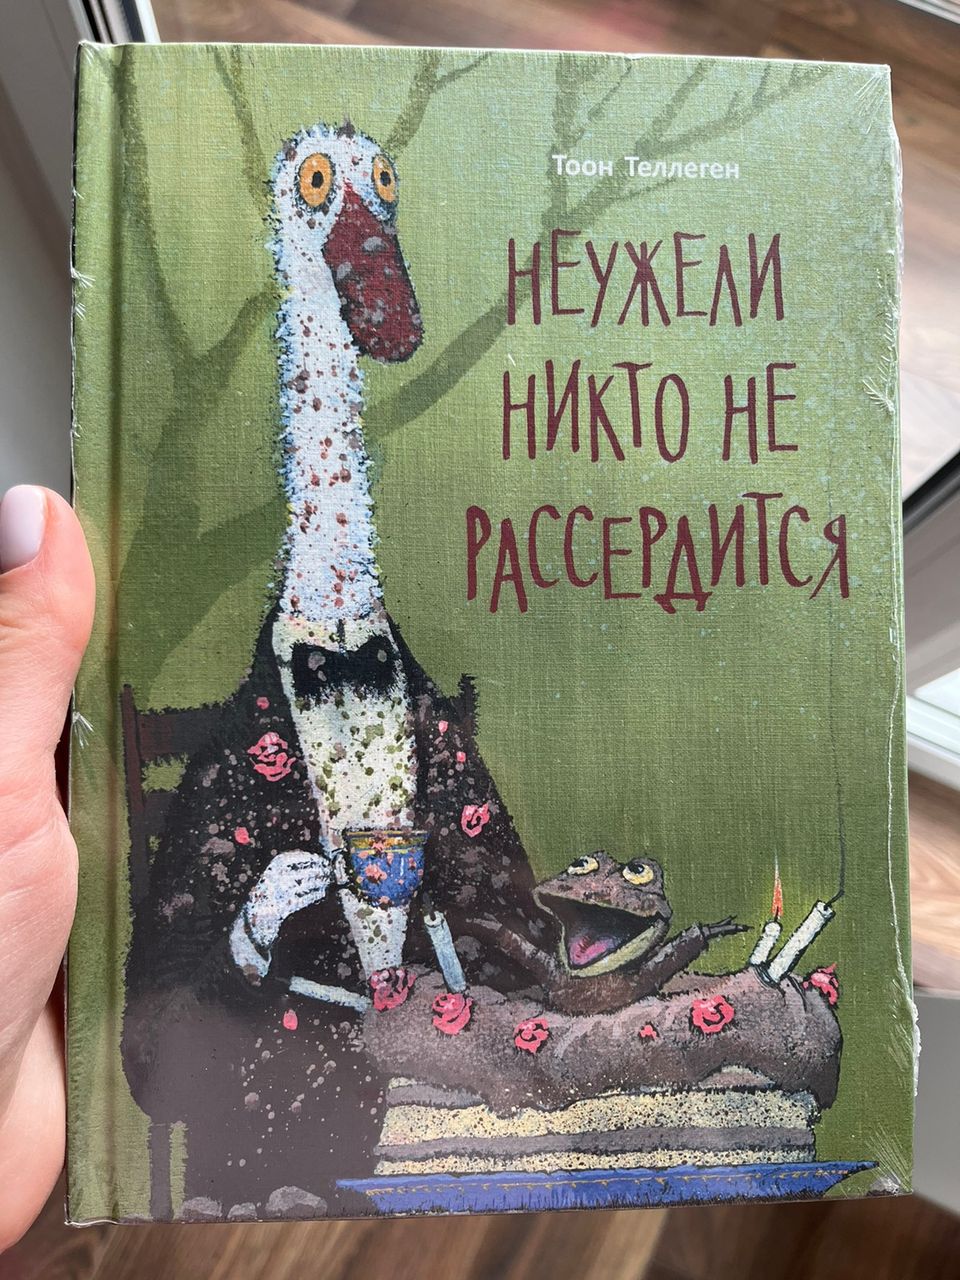 Venäläinen lastenkirja